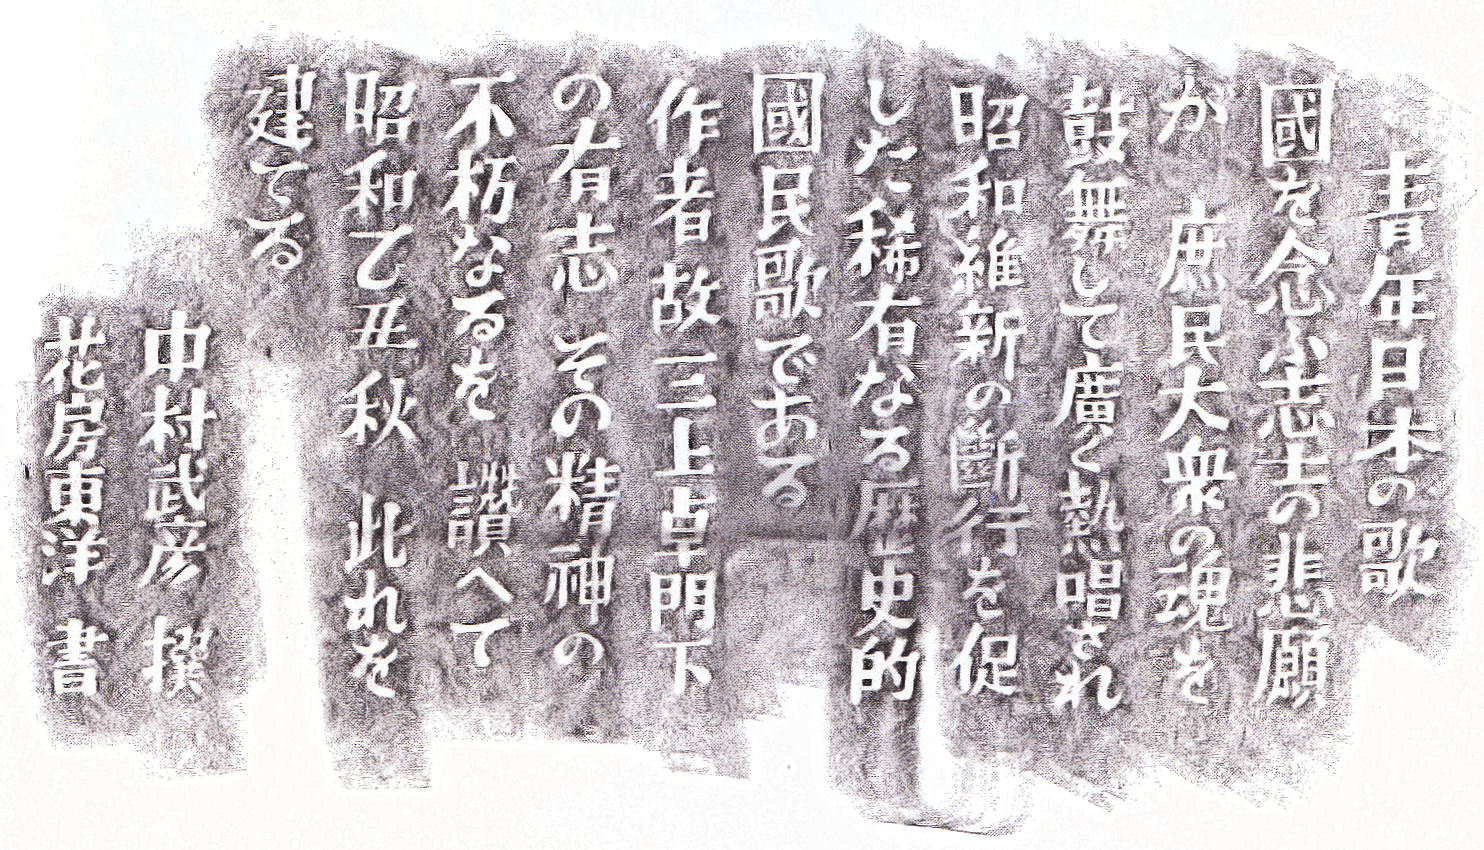 昭和维新之歌(音乐)《昭和维新之歌》是日本昭和时代初期由日本海军